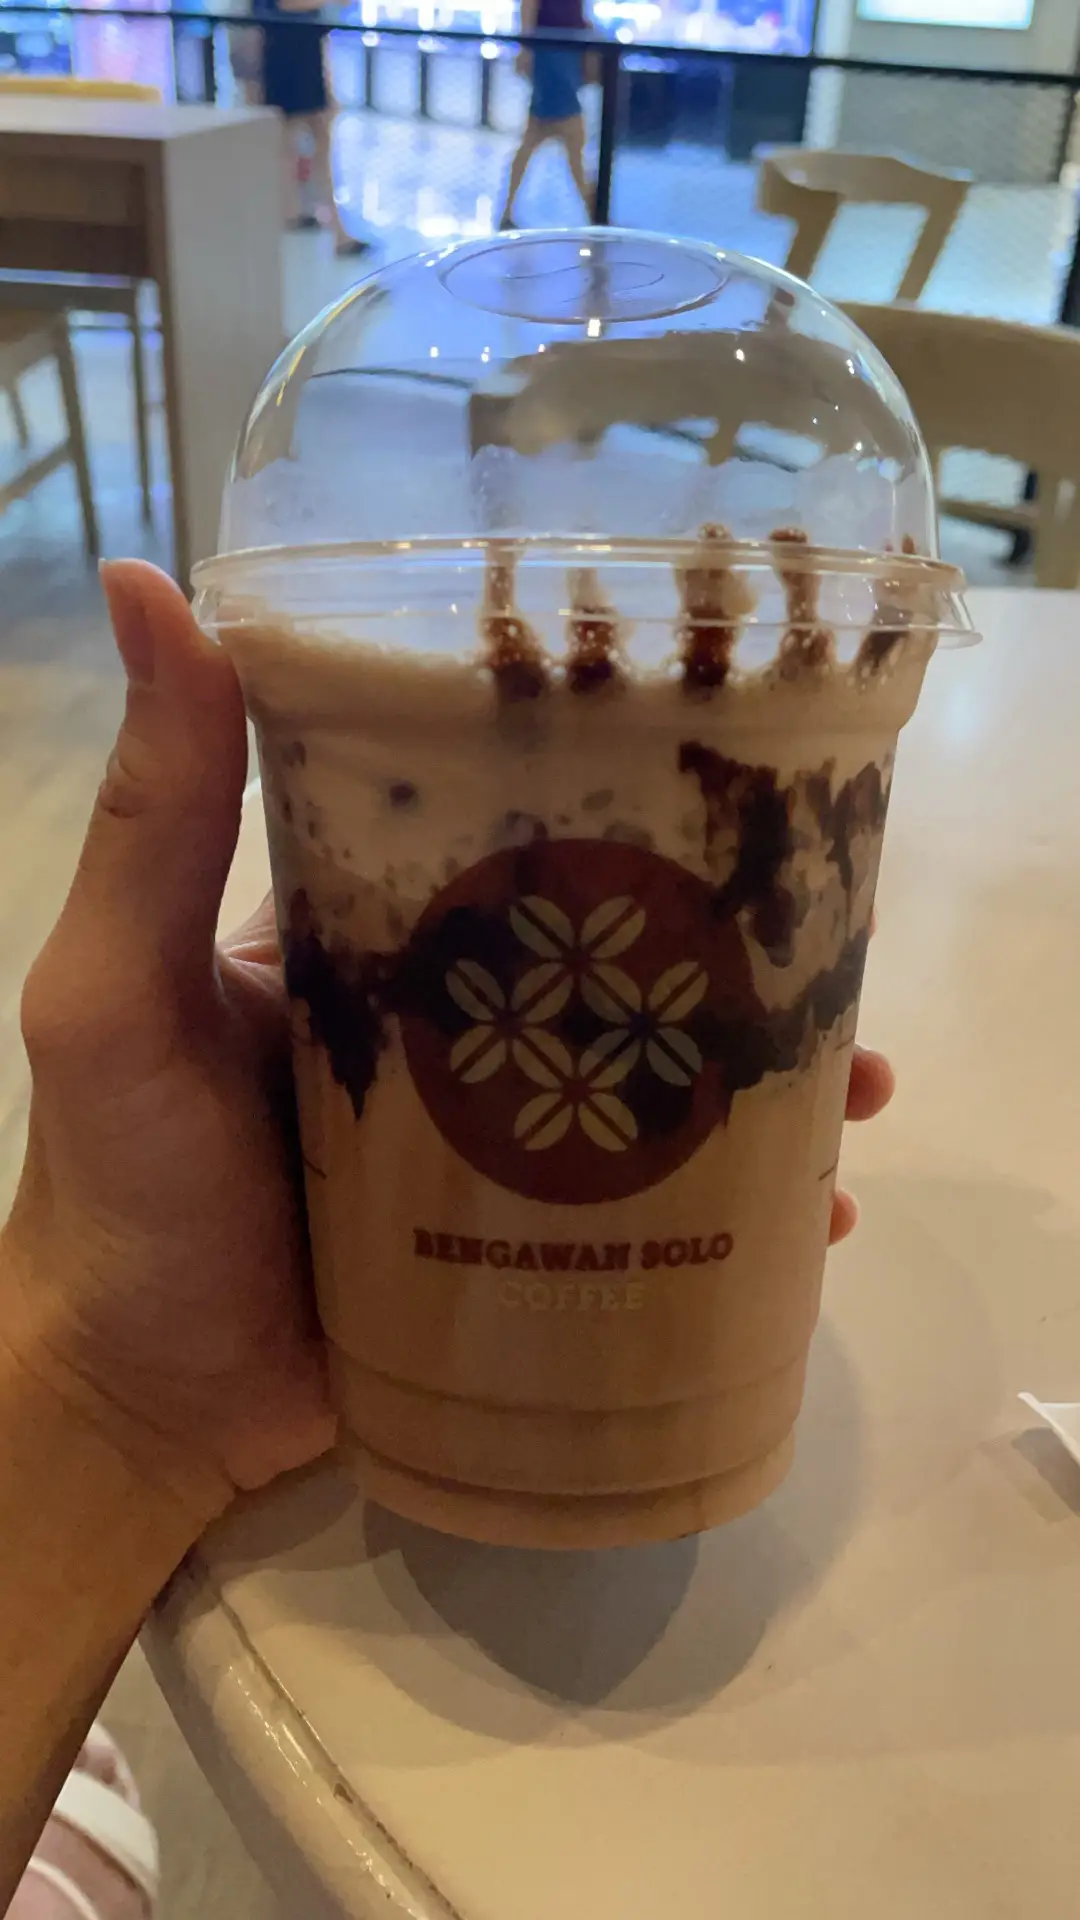 Bengawan Solo Coffee